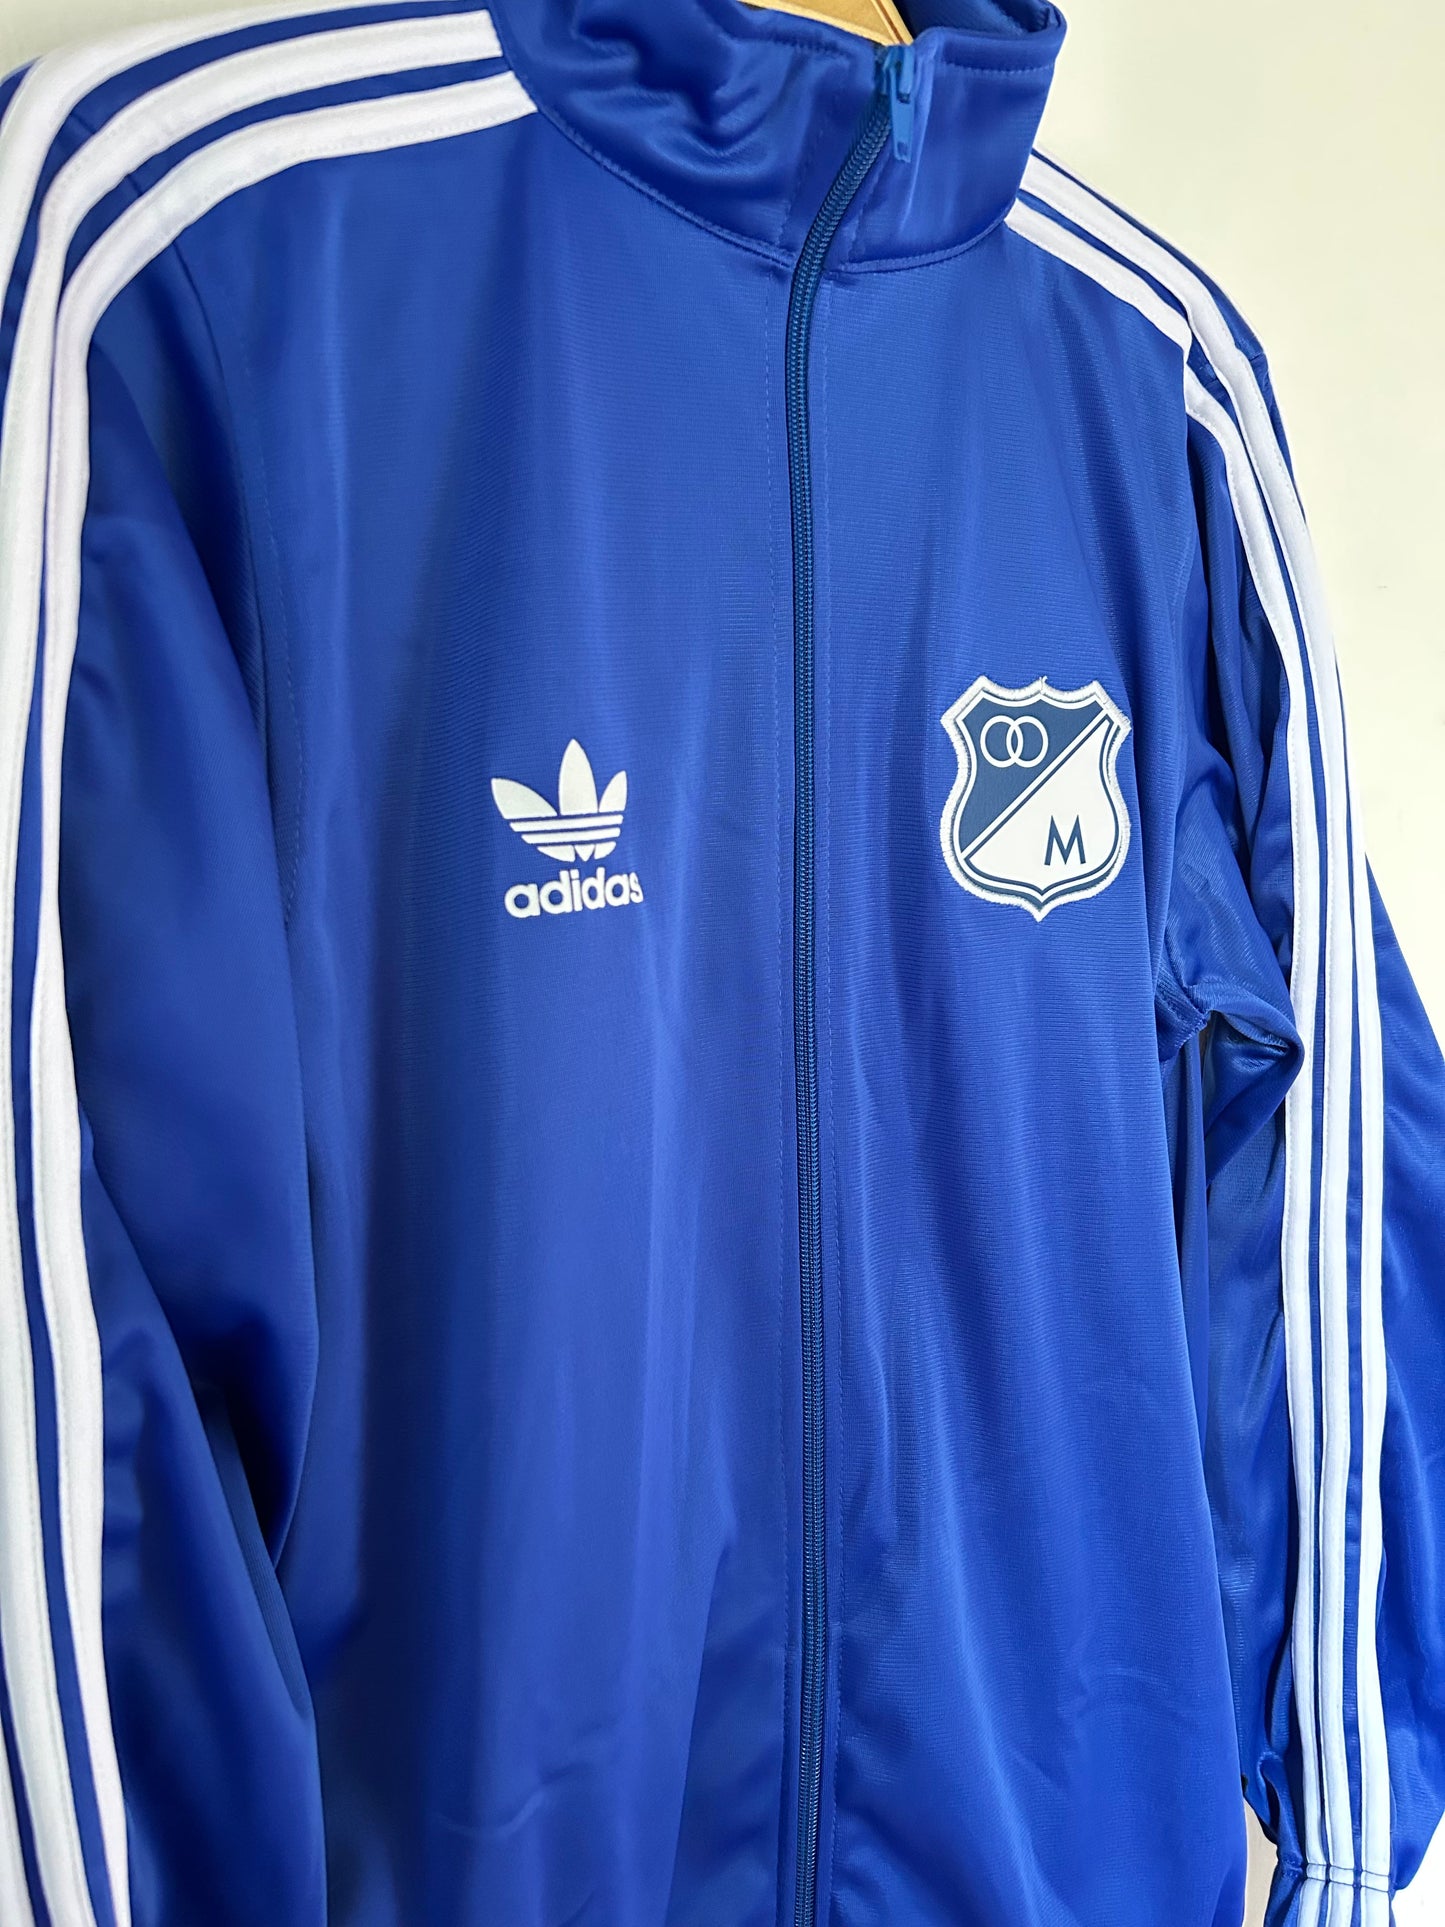 Chaqueta Millonarios 1996 Adidas Azul